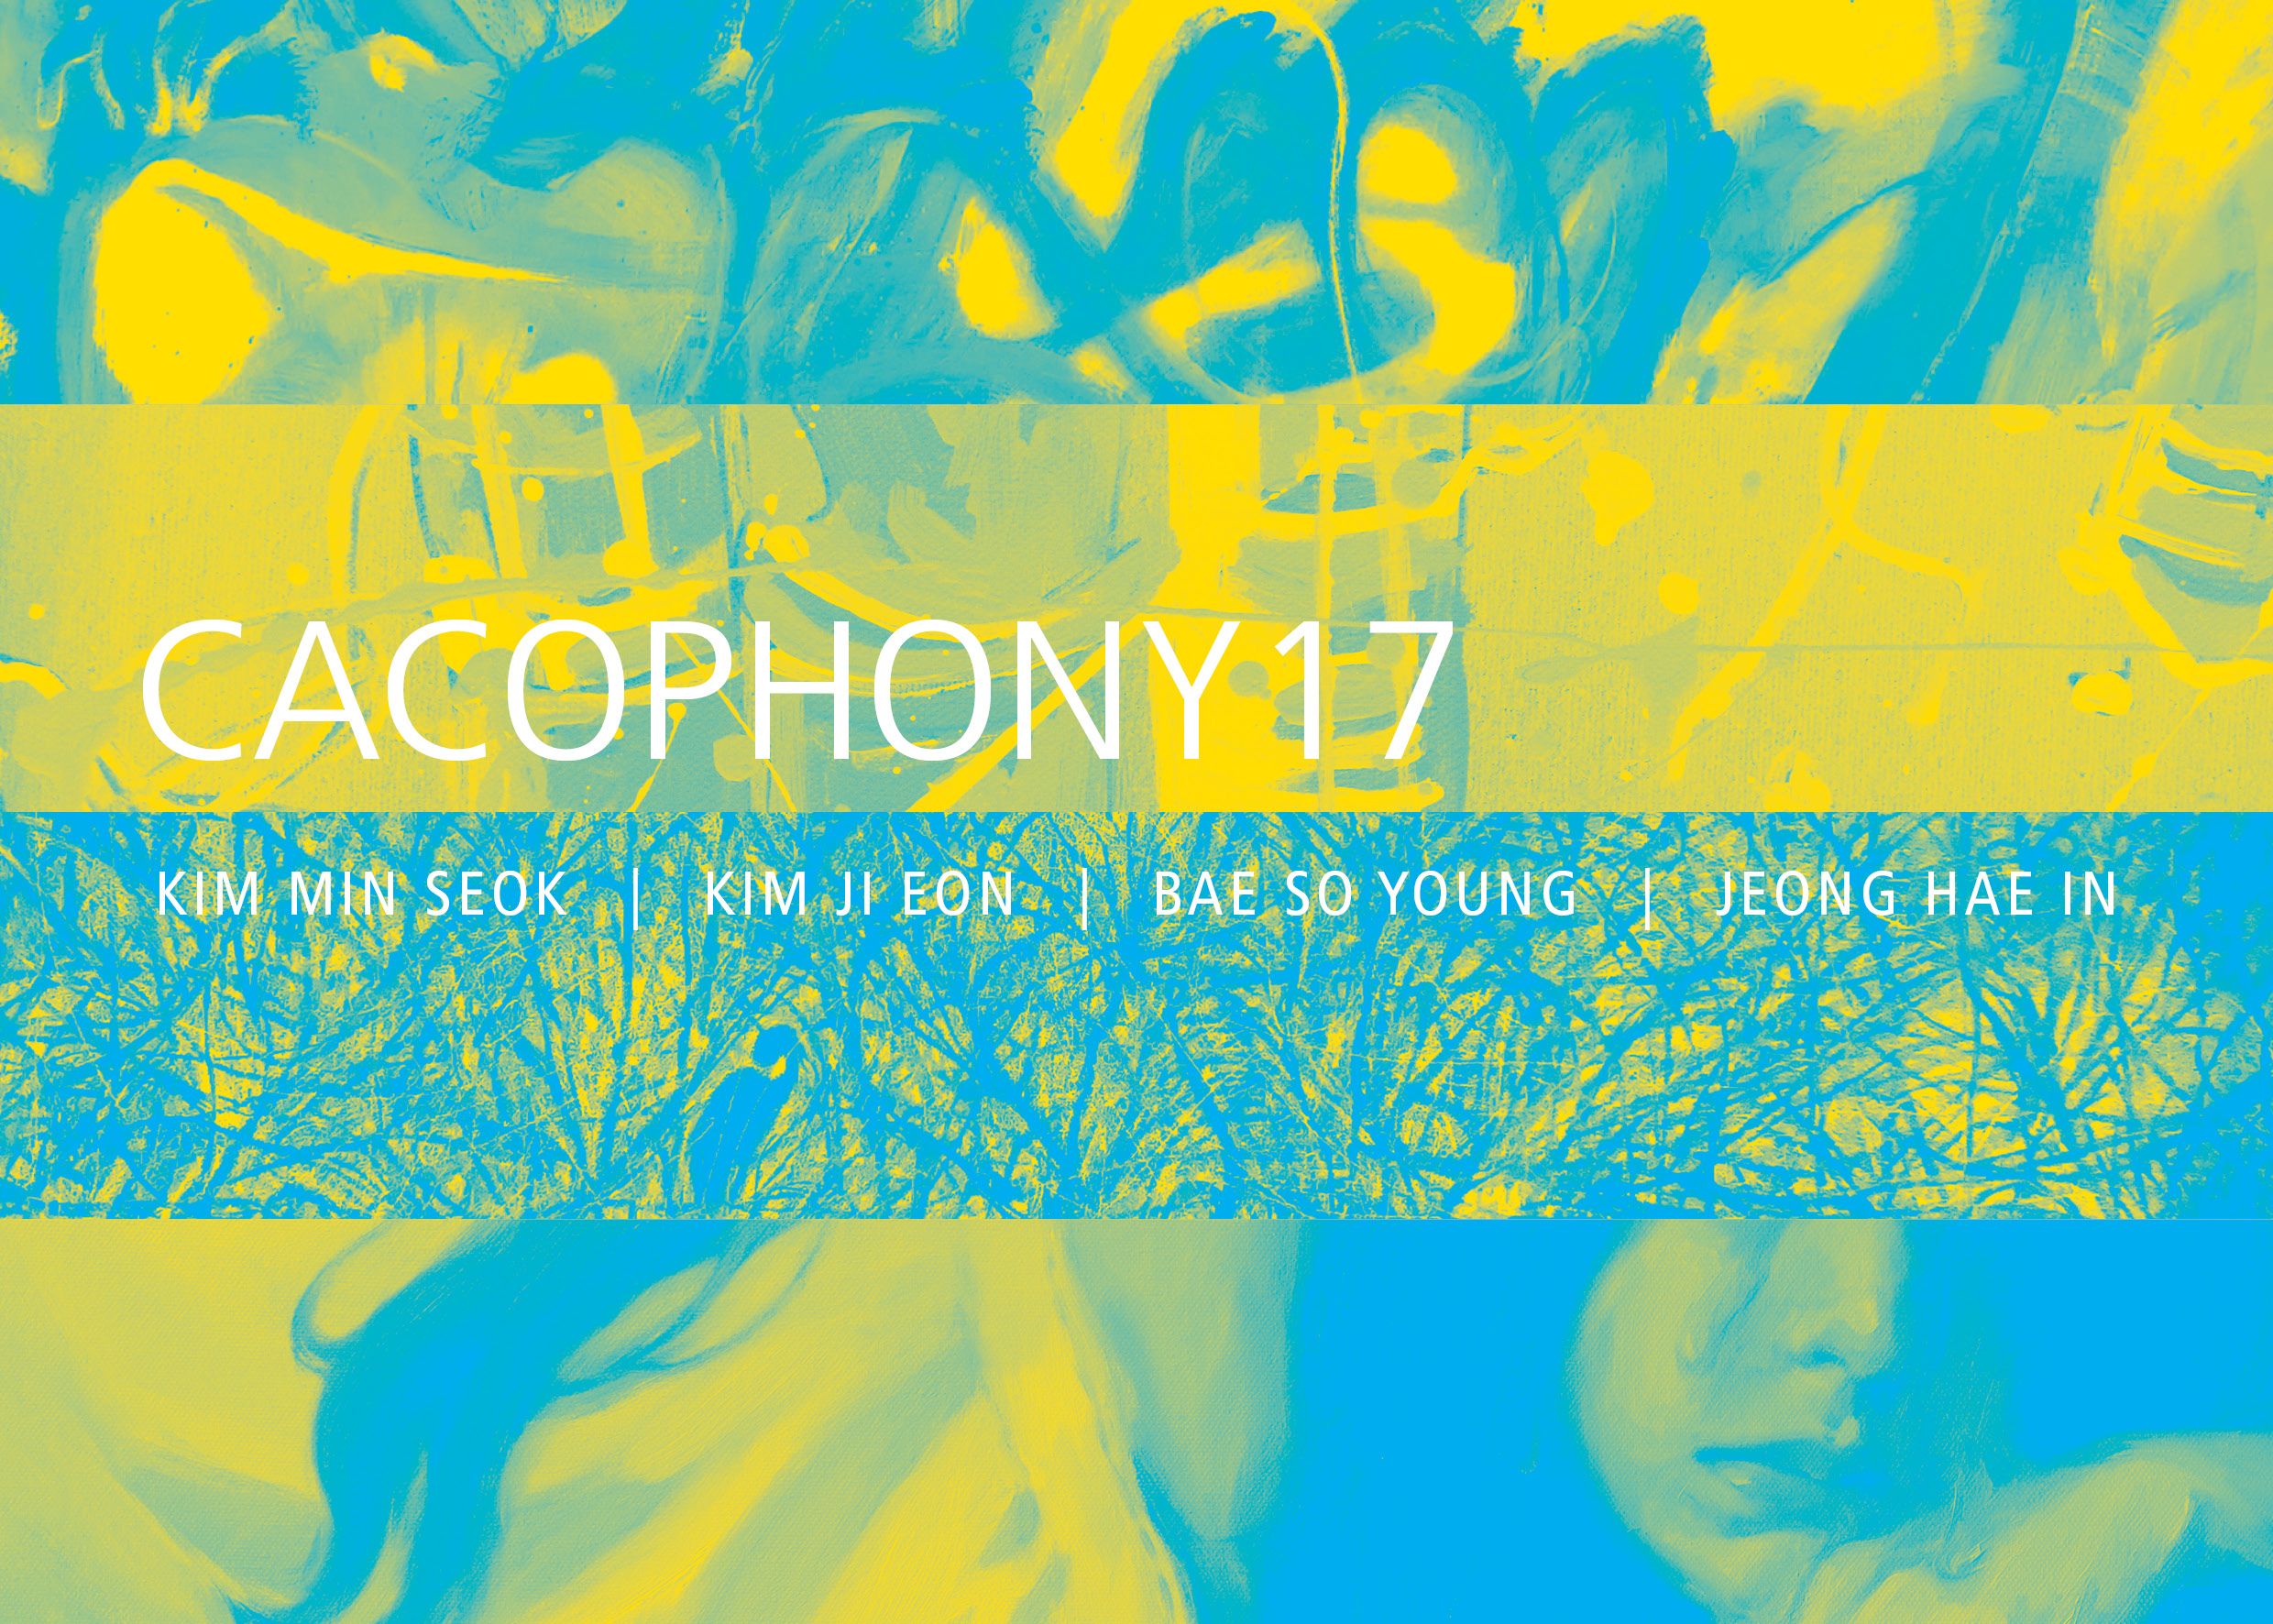 Cacophony 17